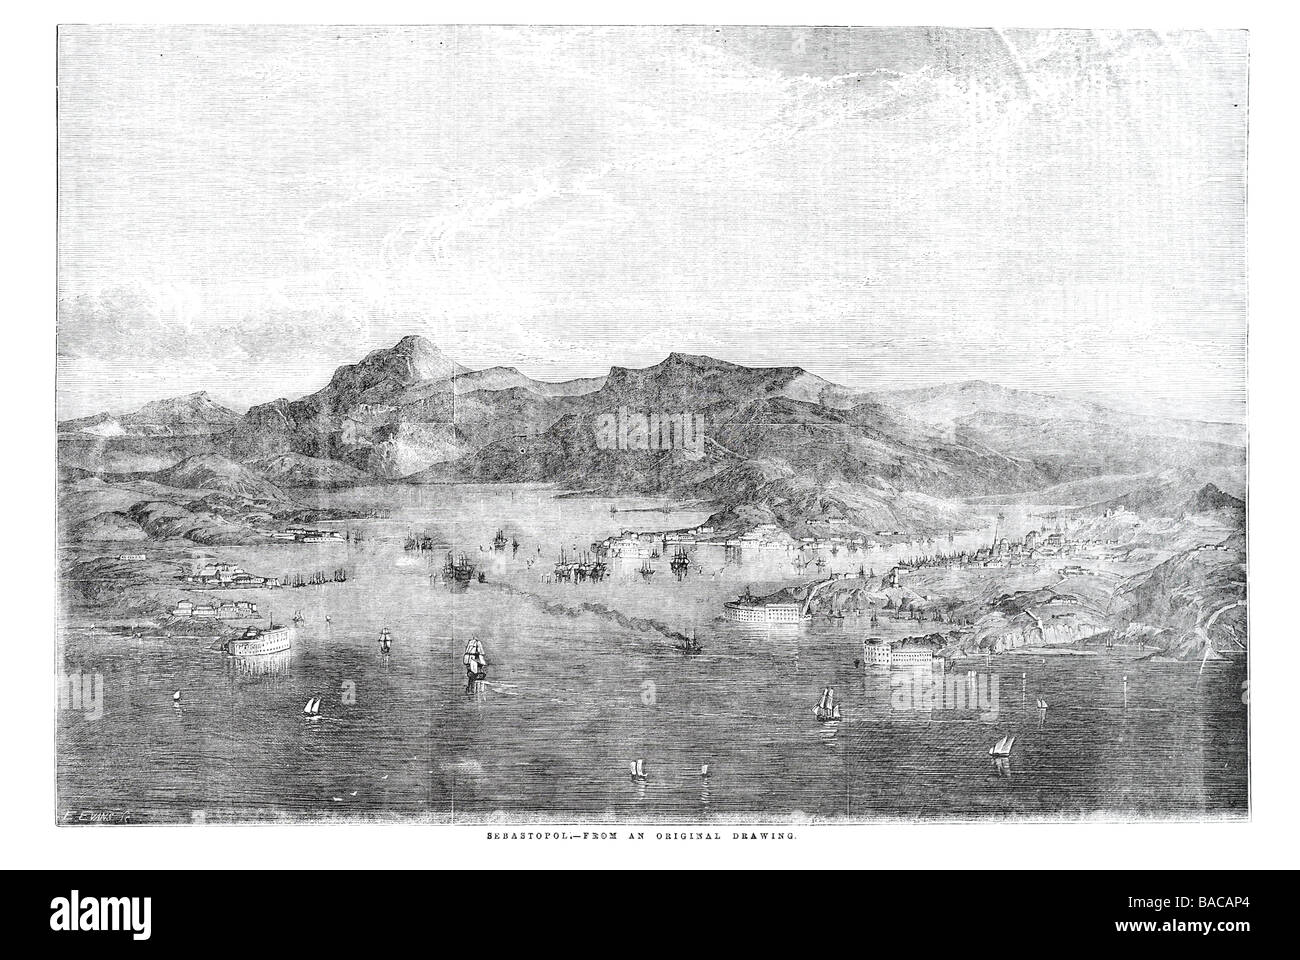 Sewastopol 1854 große Belagerung Krim Krieg alliierte Truppen britischen Französisch Türkisch Armee Infanterie Zar Schwarzmeer-Flotte gegraben Redouten Stockfoto